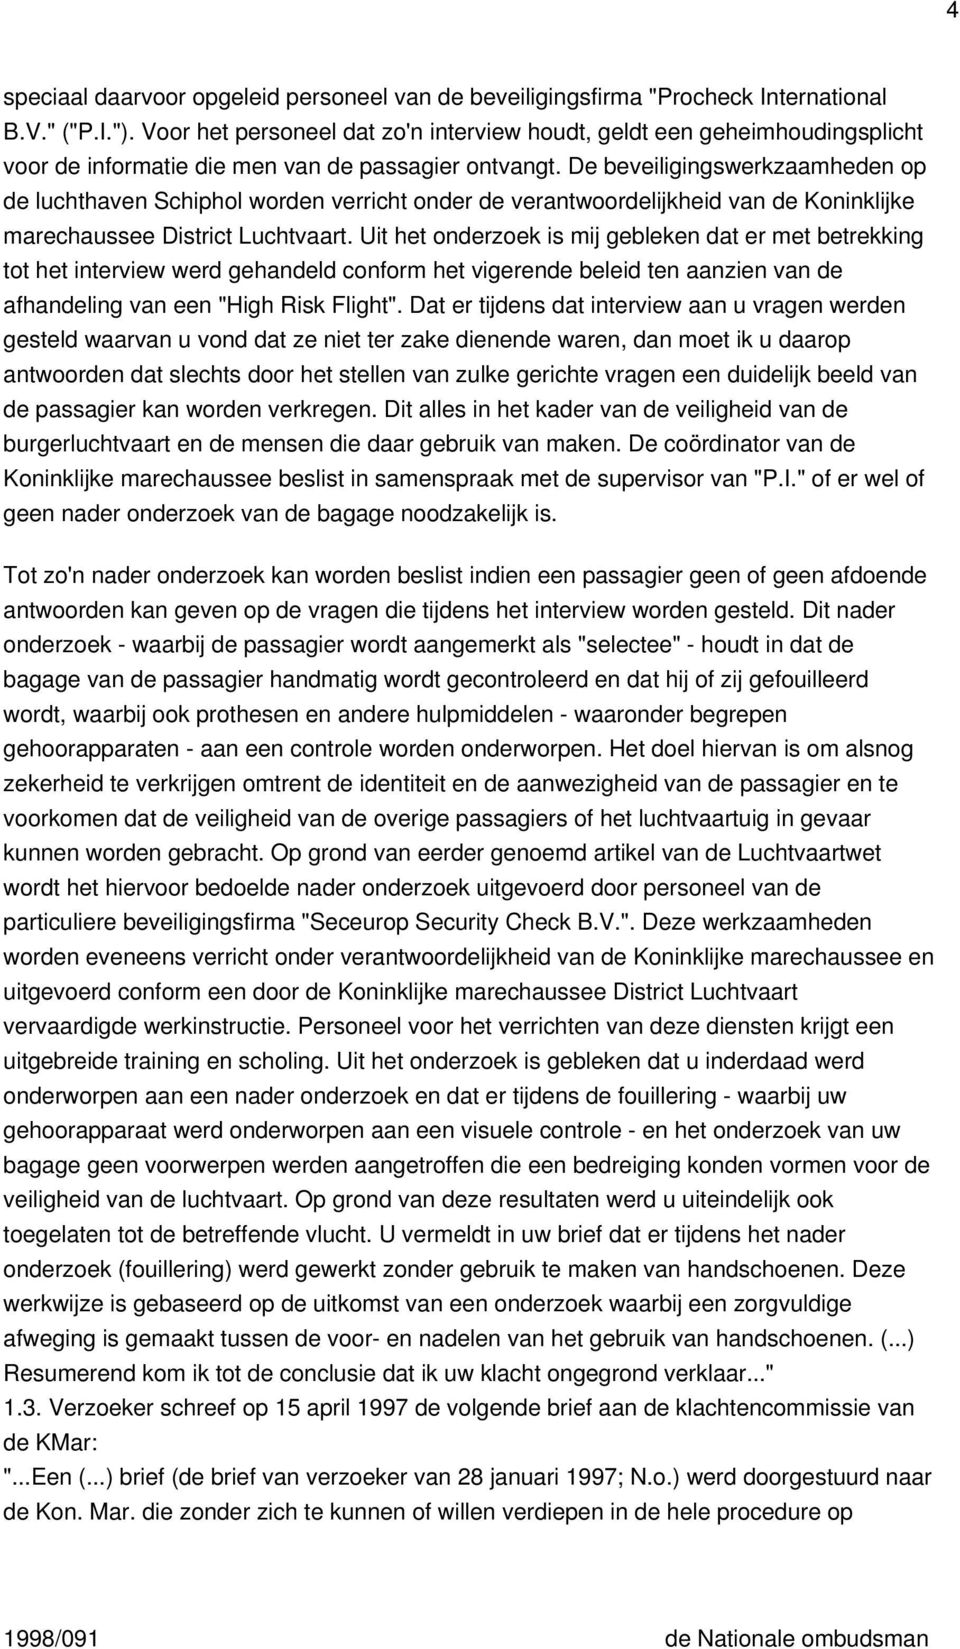 De beveiligingswerkzaamheden op de luchthaven Schiphol worden verricht onder de verantwoordelijkheid van de Koninklijke marechaussee District Luchtvaart.